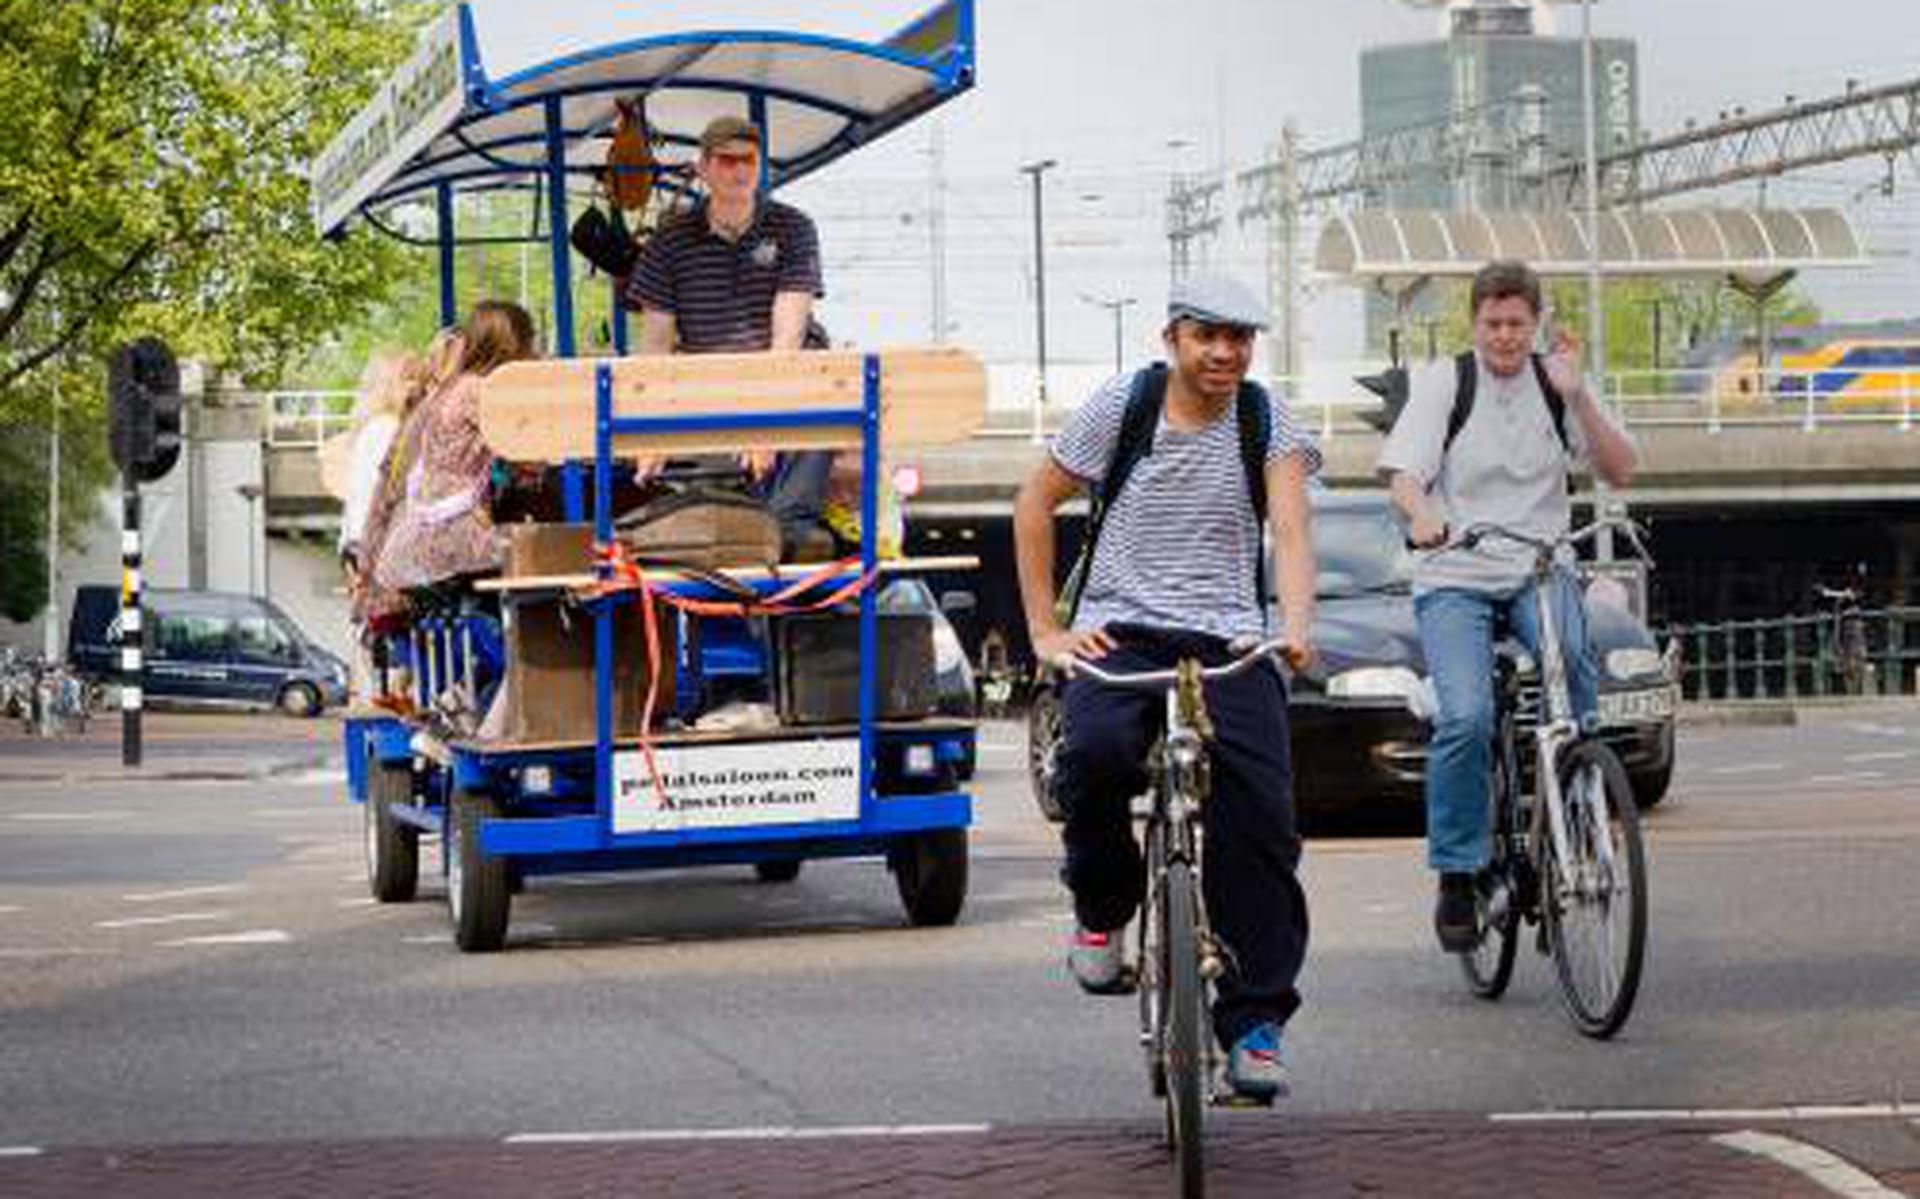 Een bierfiets in het centrum van Amsterdan - voordat de gemeente de bierfietsen weerde uit de stad